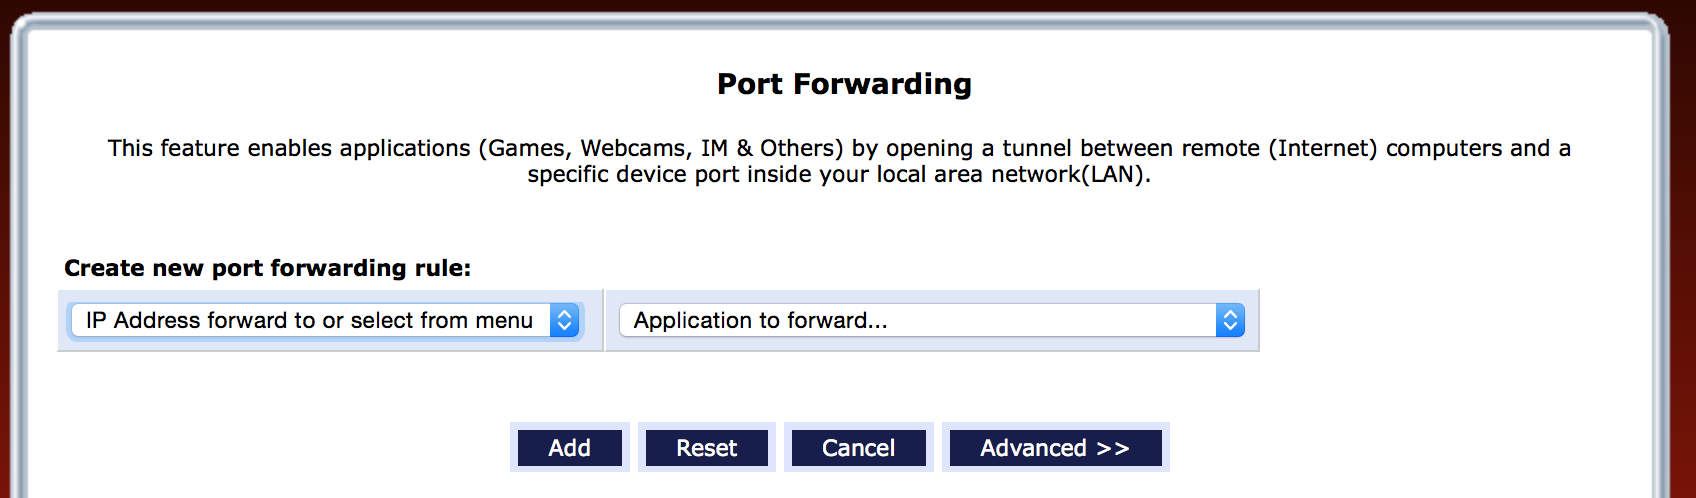 port_forwarding.png